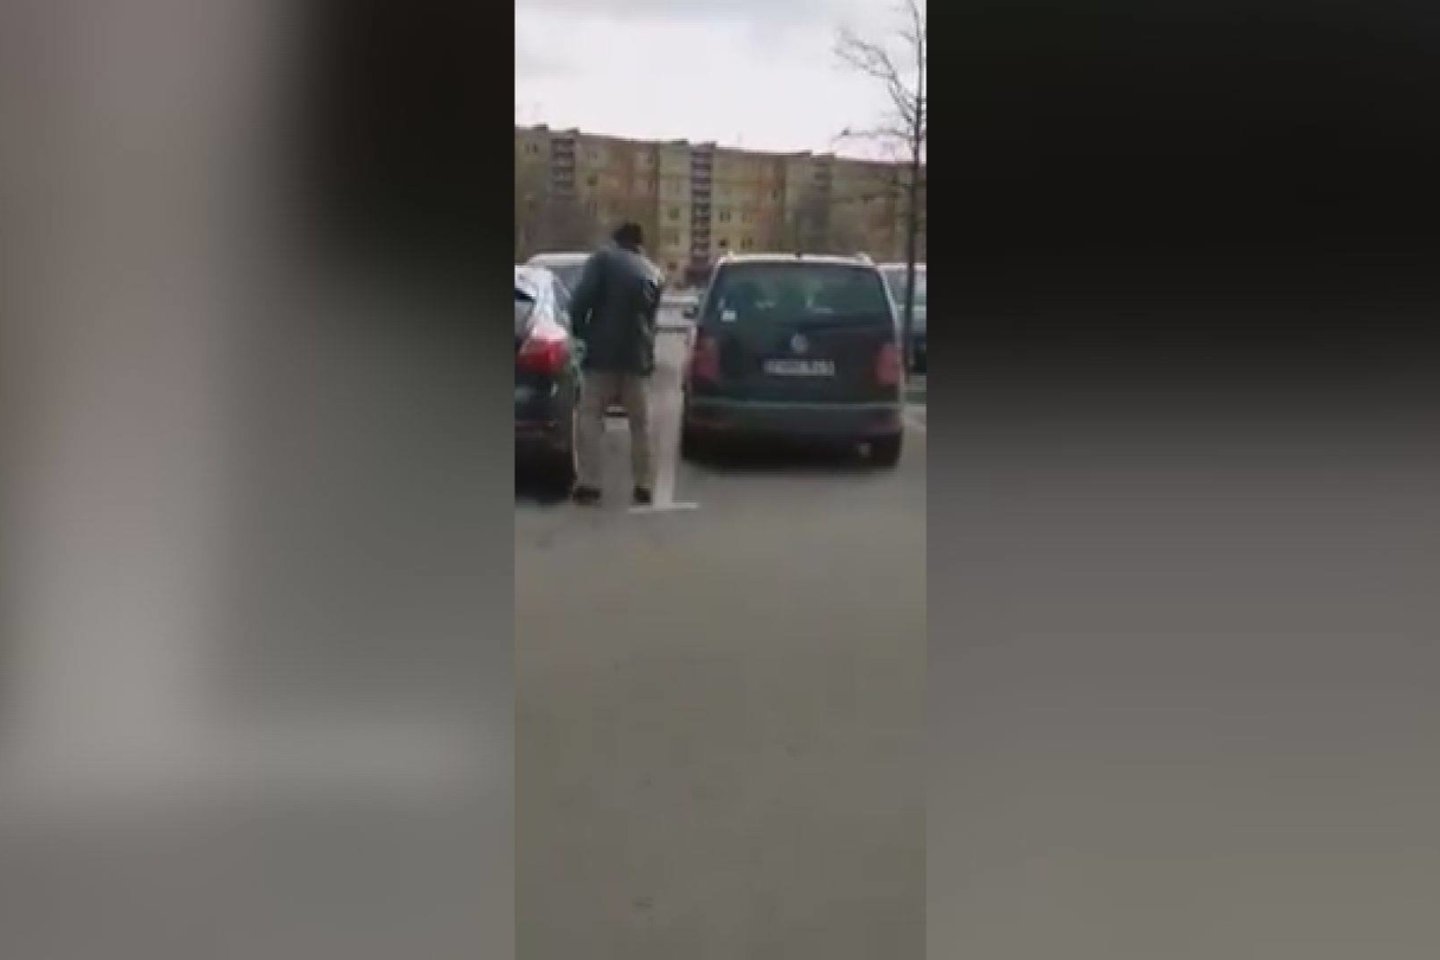  Pilietiškas šiaulietis nufilmavo, kaip vagišius bandė įsibrauti į automobilį. <br> Stop kadras iš facebook tinkle paviešinto vaizdo įrašo.